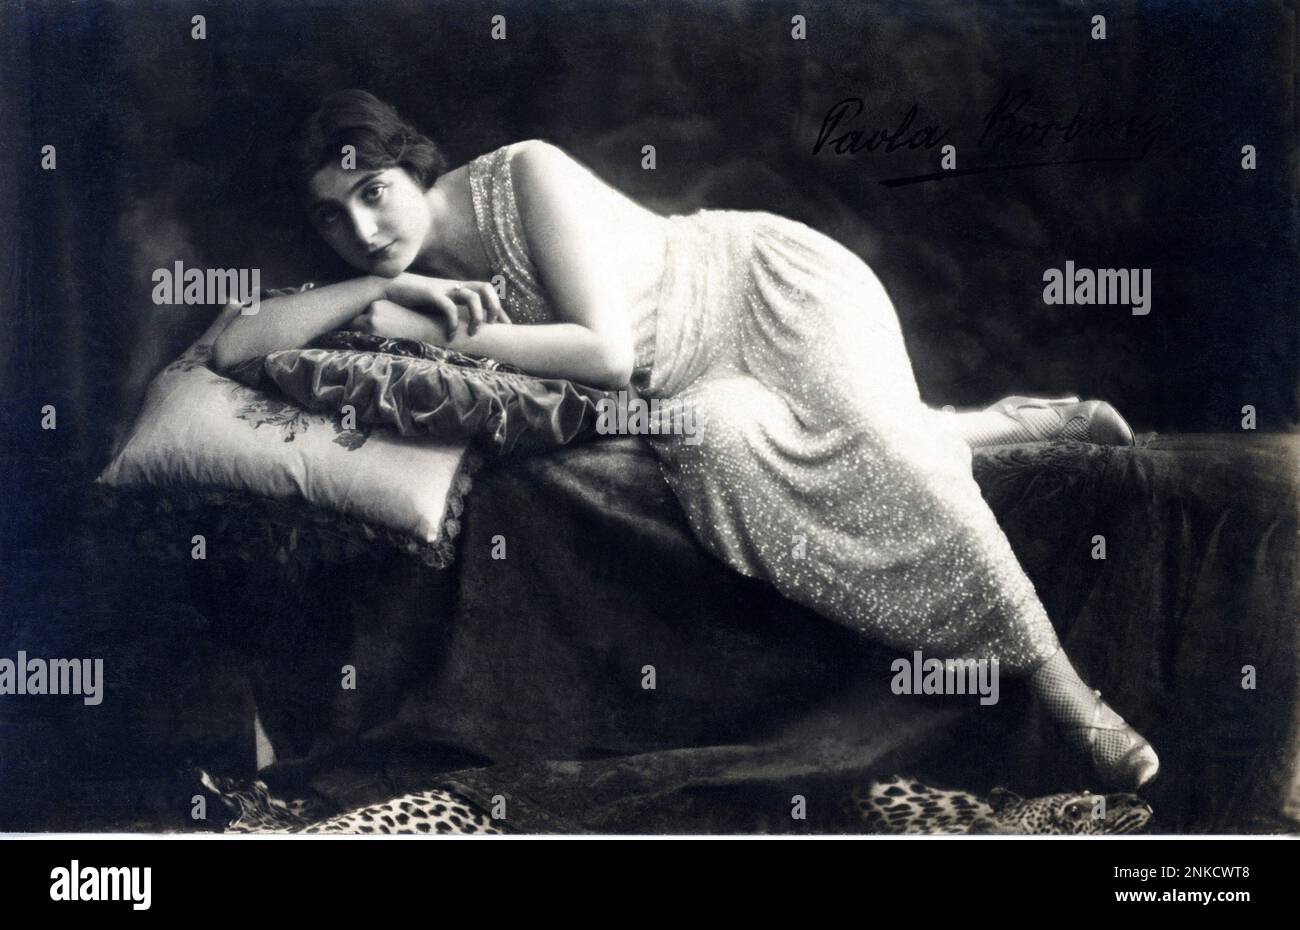 1920 : l'attrice italiana del cinema e del teatro PAOLA BORBONI ( Golese di Parma 1900 - Bodio Lomnago , Varese 1995 ) - CINEMA - TEATRO - attrice cinematografica e teatrale - sorriso - ritratto - ritratto - abito lamé - scarpe - scarpe - calze a rete - cuscini - cuscini - cuscino - prima - autografo - Teatro --- Archivio GBB Foto Stock